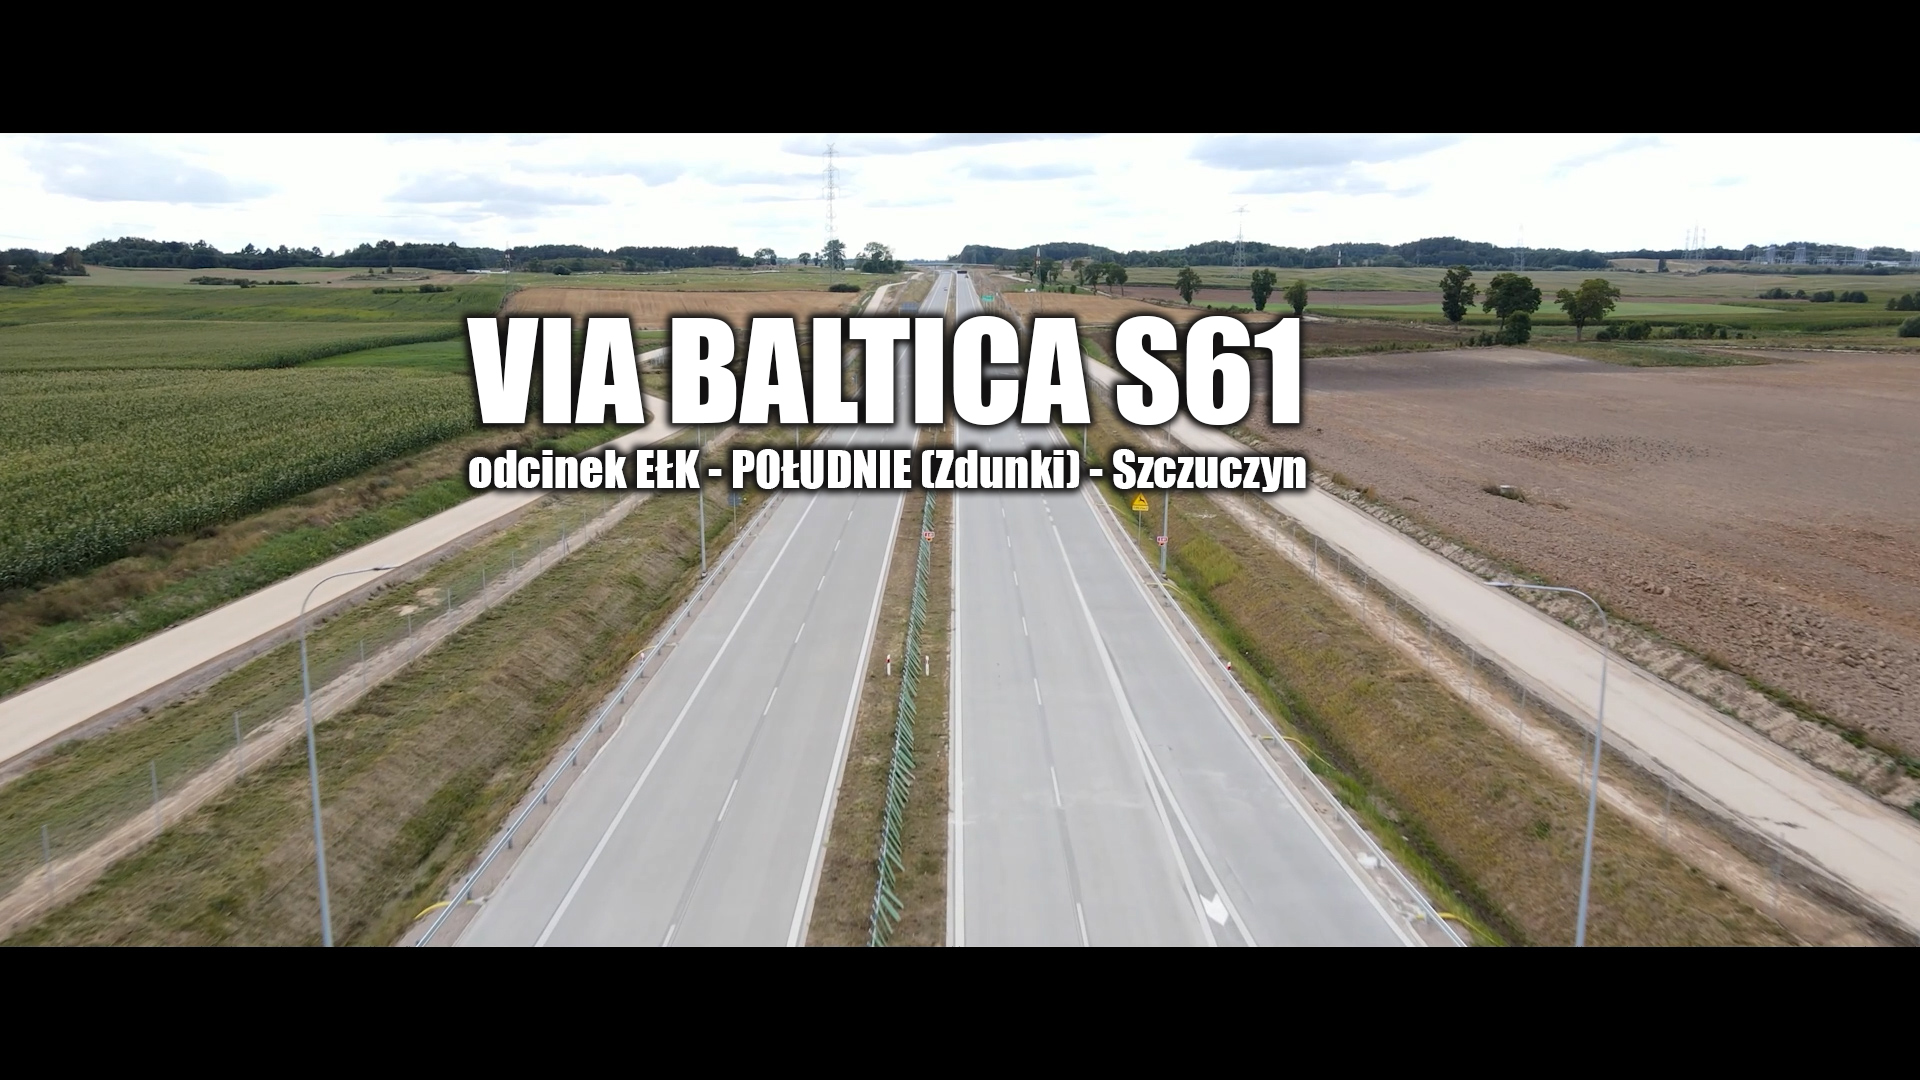 Oficjalne otwarcie kolejnego etapu drogi Via Baltica – zobacz film